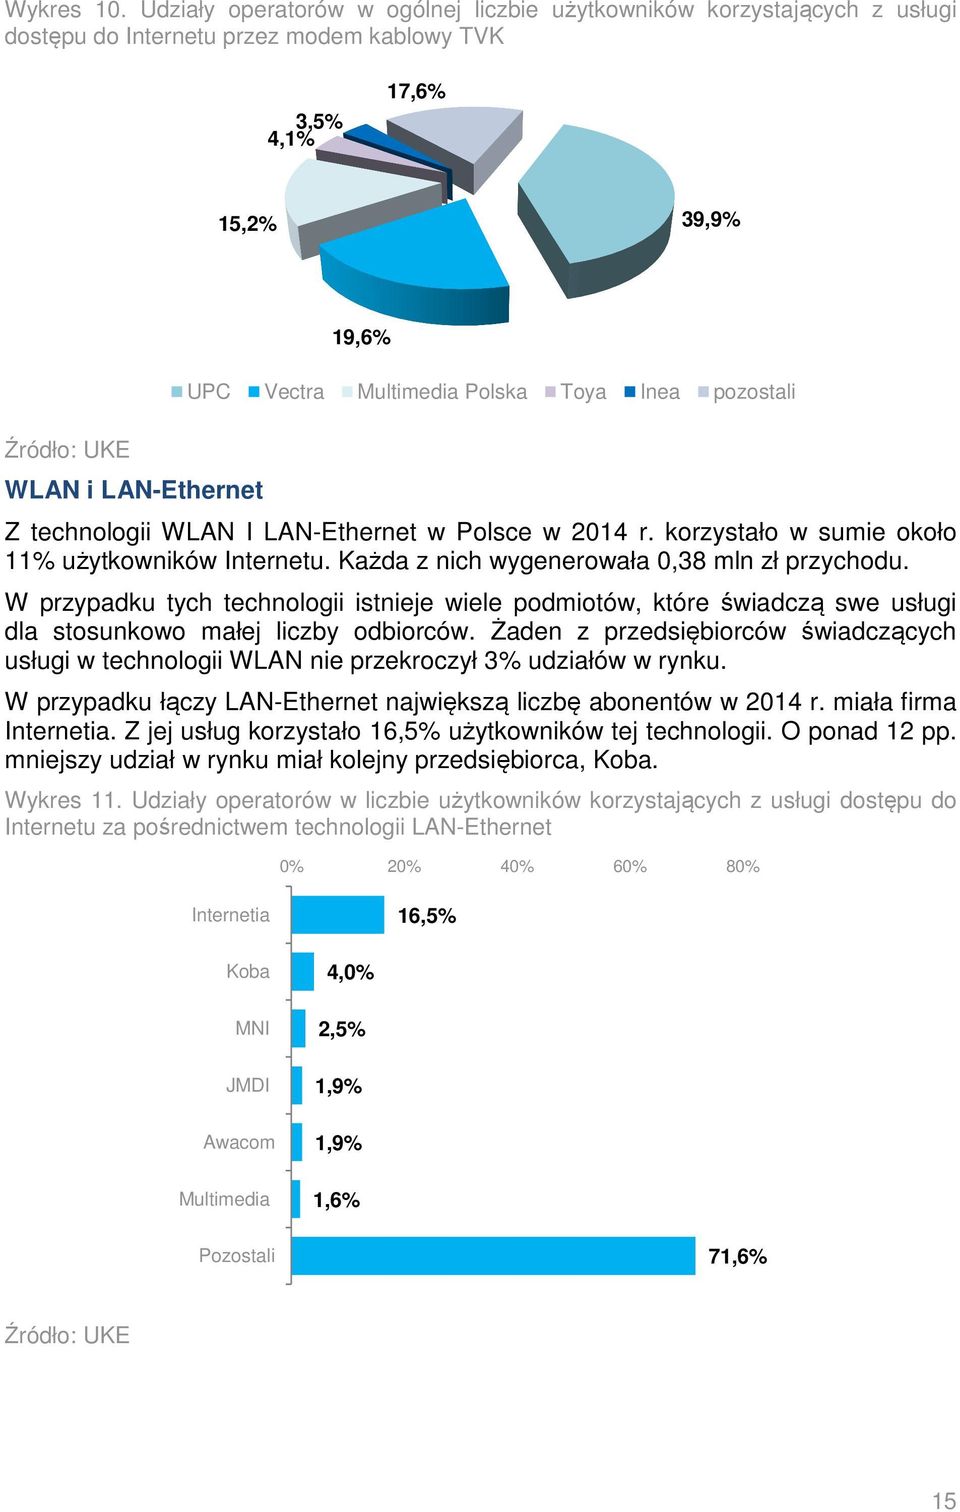 Polska Toya Inea pozostali Z technologii WLAN I LAN-Ethernet w Polsce w 2014 r. korzystało w sumie około 11% użytkowników Internetu. Każda z nich wygenerowała 0,38 mln zł przychodu.